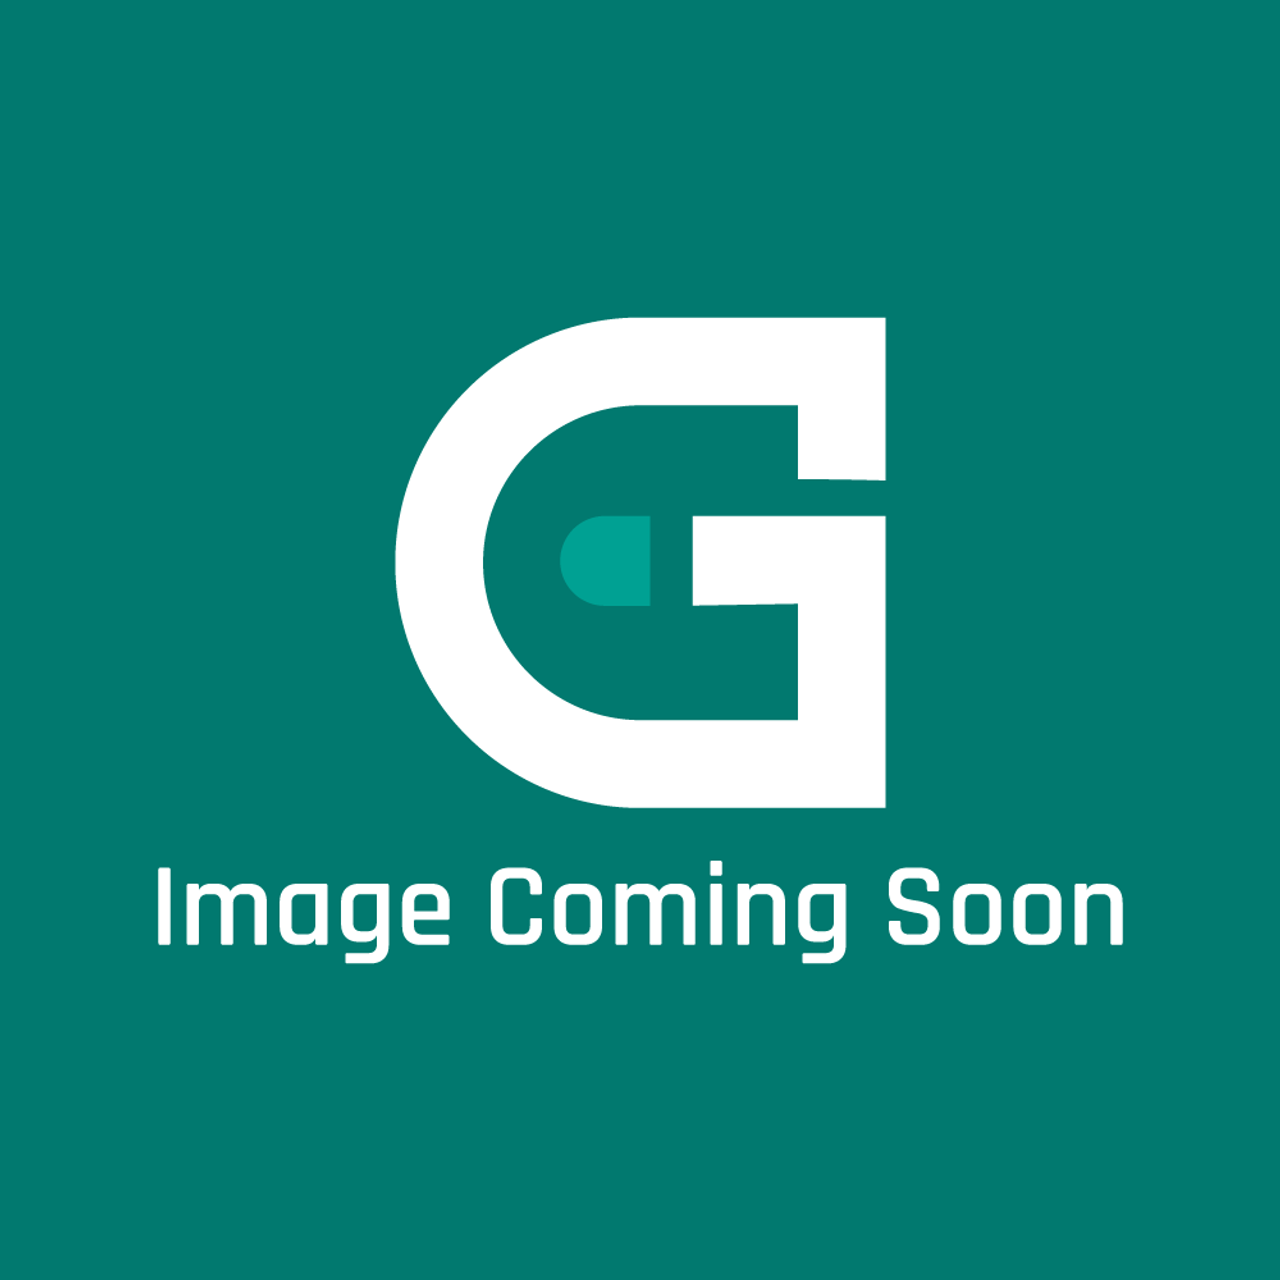 Groen N55168 - Spring - Image Coming Soon!